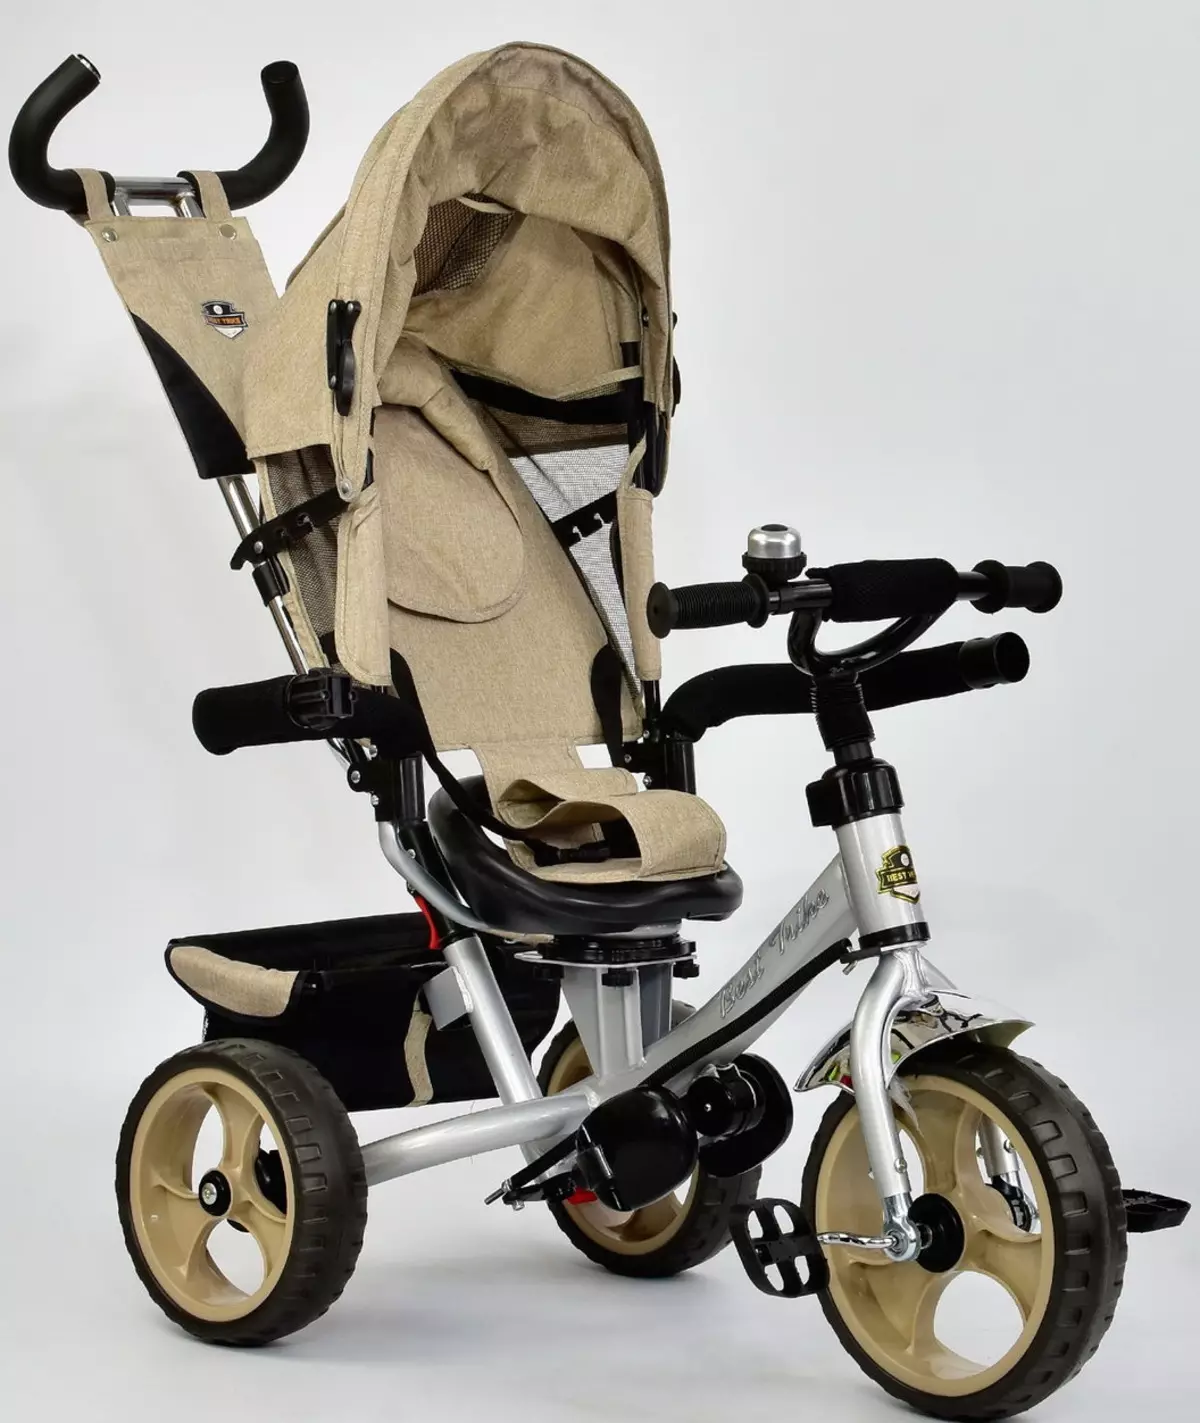 ଏକ ଶିଶୁ ପାଇଁ ସାଇକେଲ stroller (45 ଫଟୋ): 1 ବର୍ଷ ବାଳକମାନଙ୍କୁ ର tricycle cyclers ର ଚୟନ, ପଦଚାଳନା ମଡେଲ folding ର ସମୀକ୍ଷା 8581_41